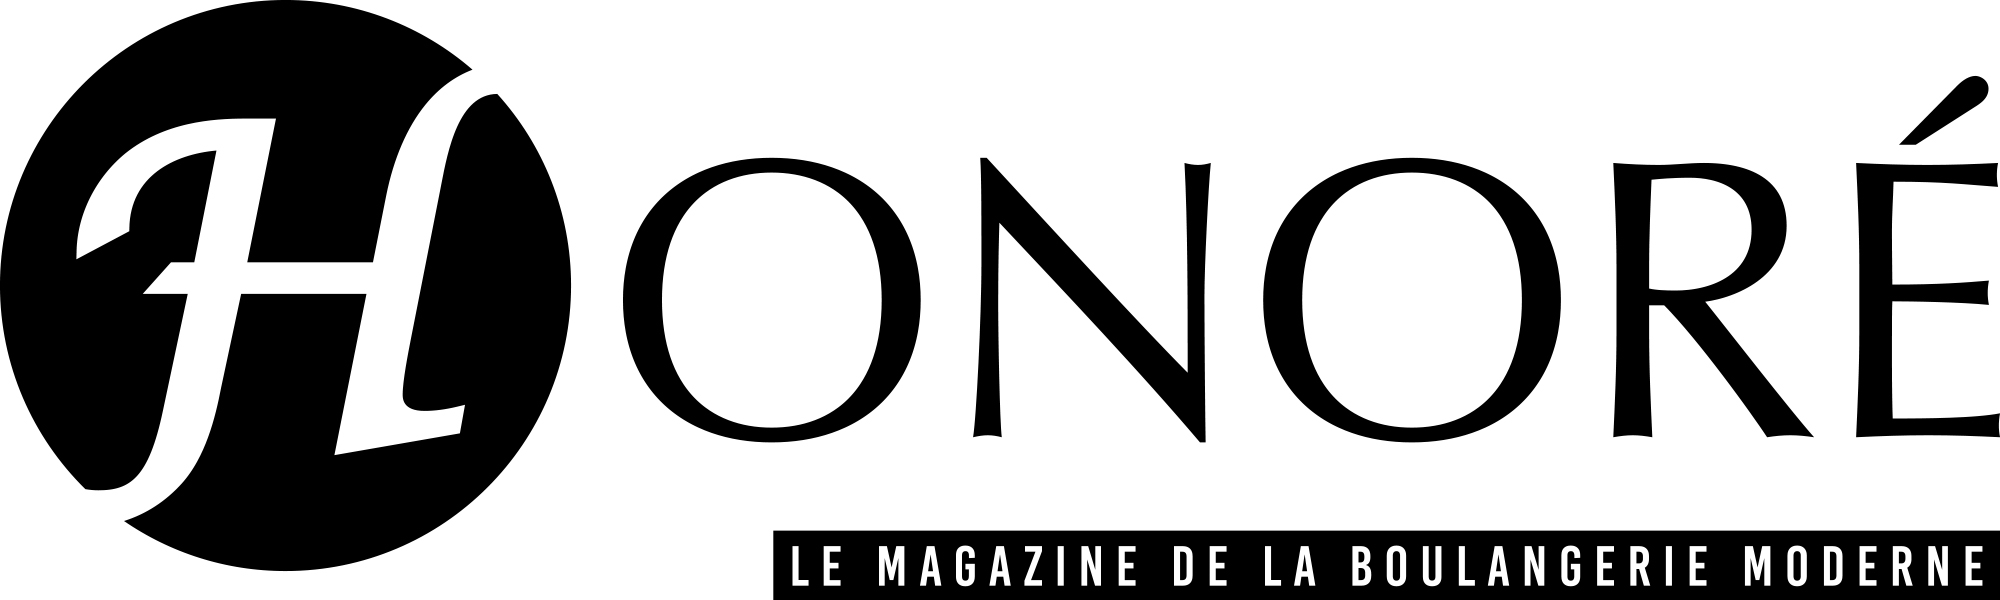 logo Honoré